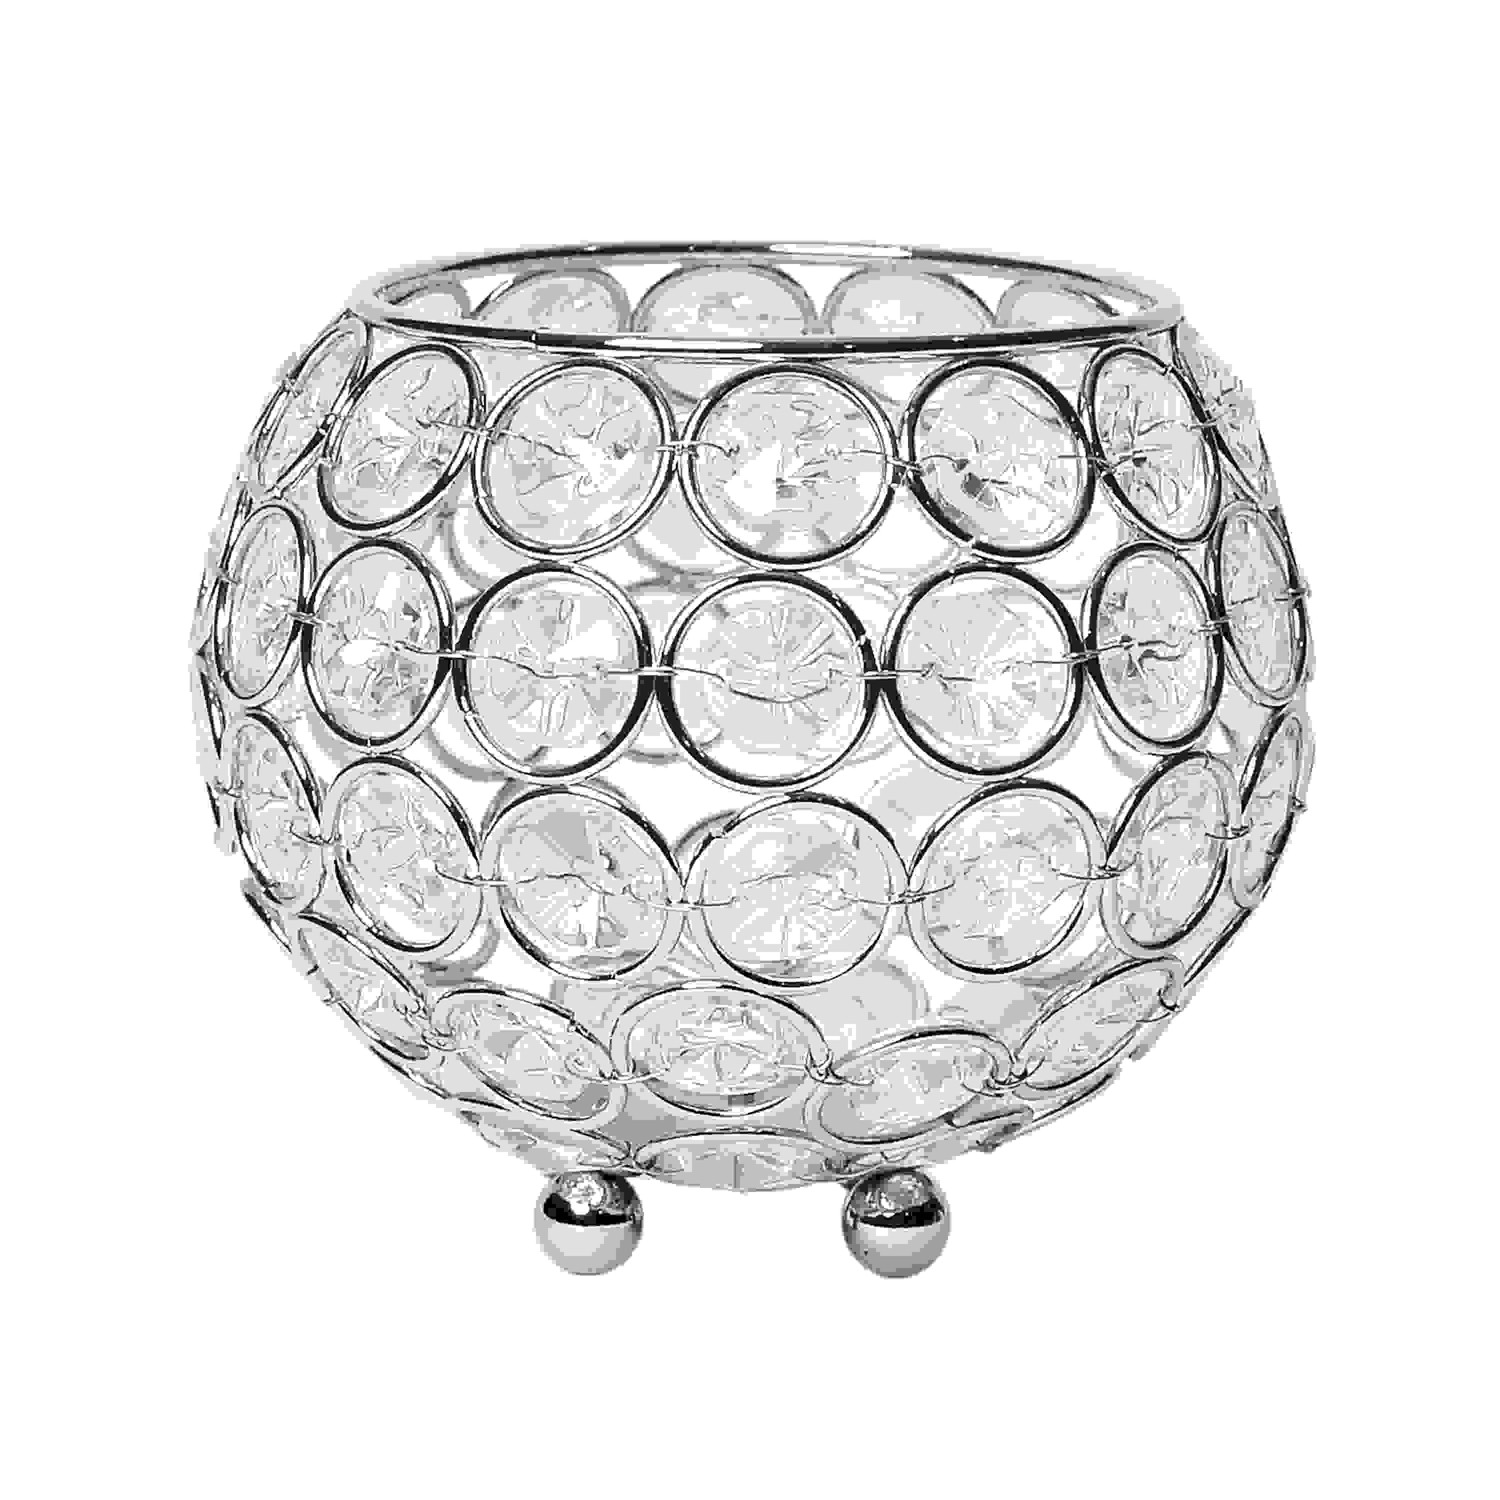 Elegant Designs Elipse Crystal Circular Bowl Candle Holder, Flower Vase, Wedding Centerpiece, Favor, 4.25 Inch, Chrome